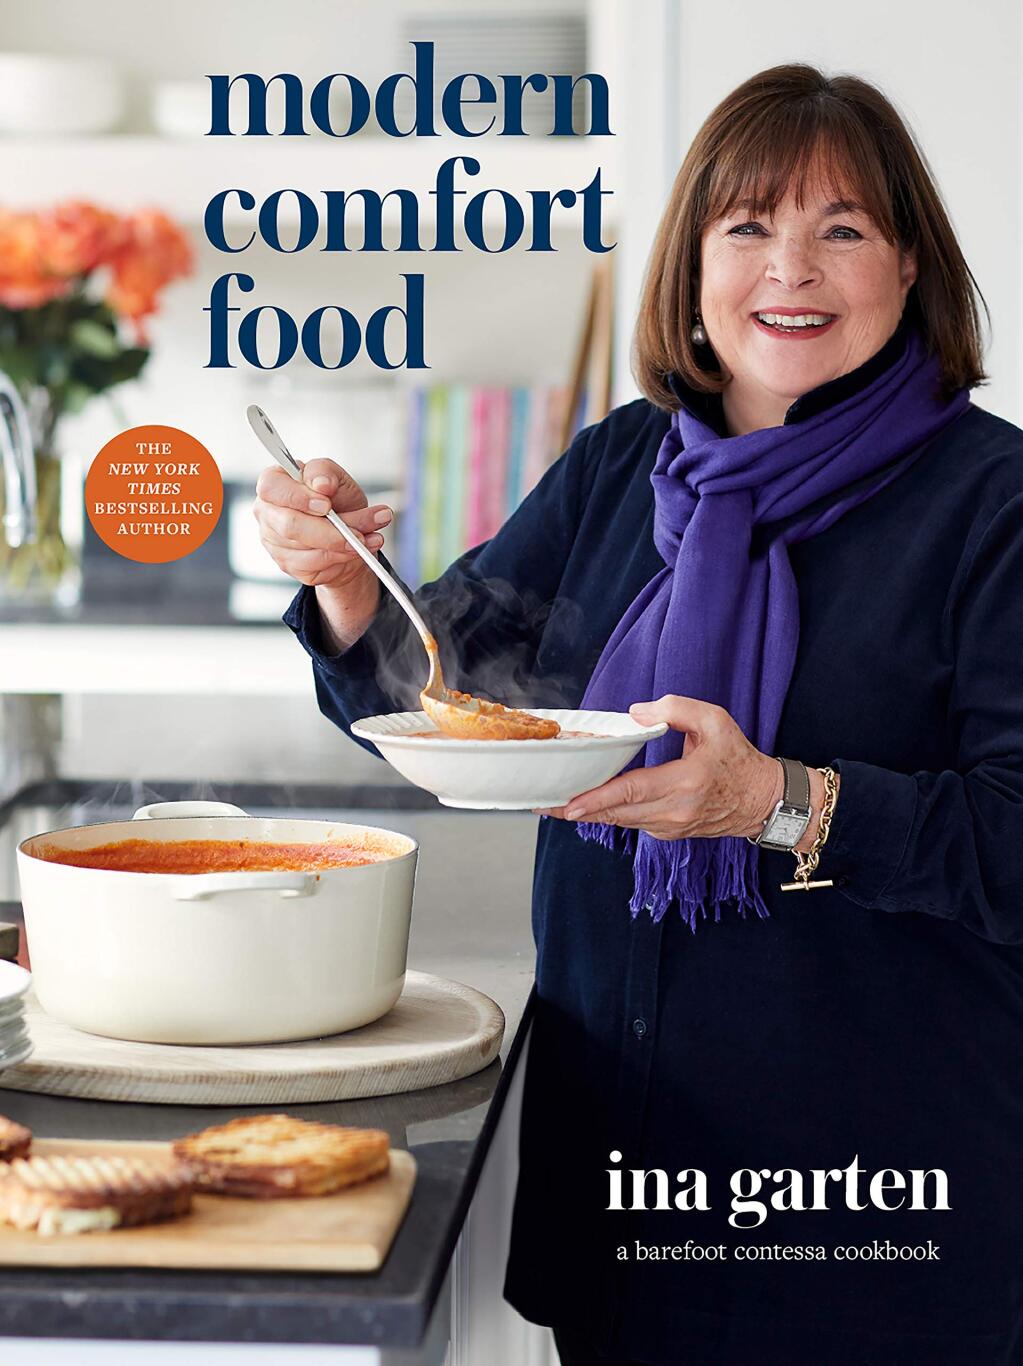 Ina Garten’s “Modern Comfort Food” is the No. bestselling book in Petaluma this week.